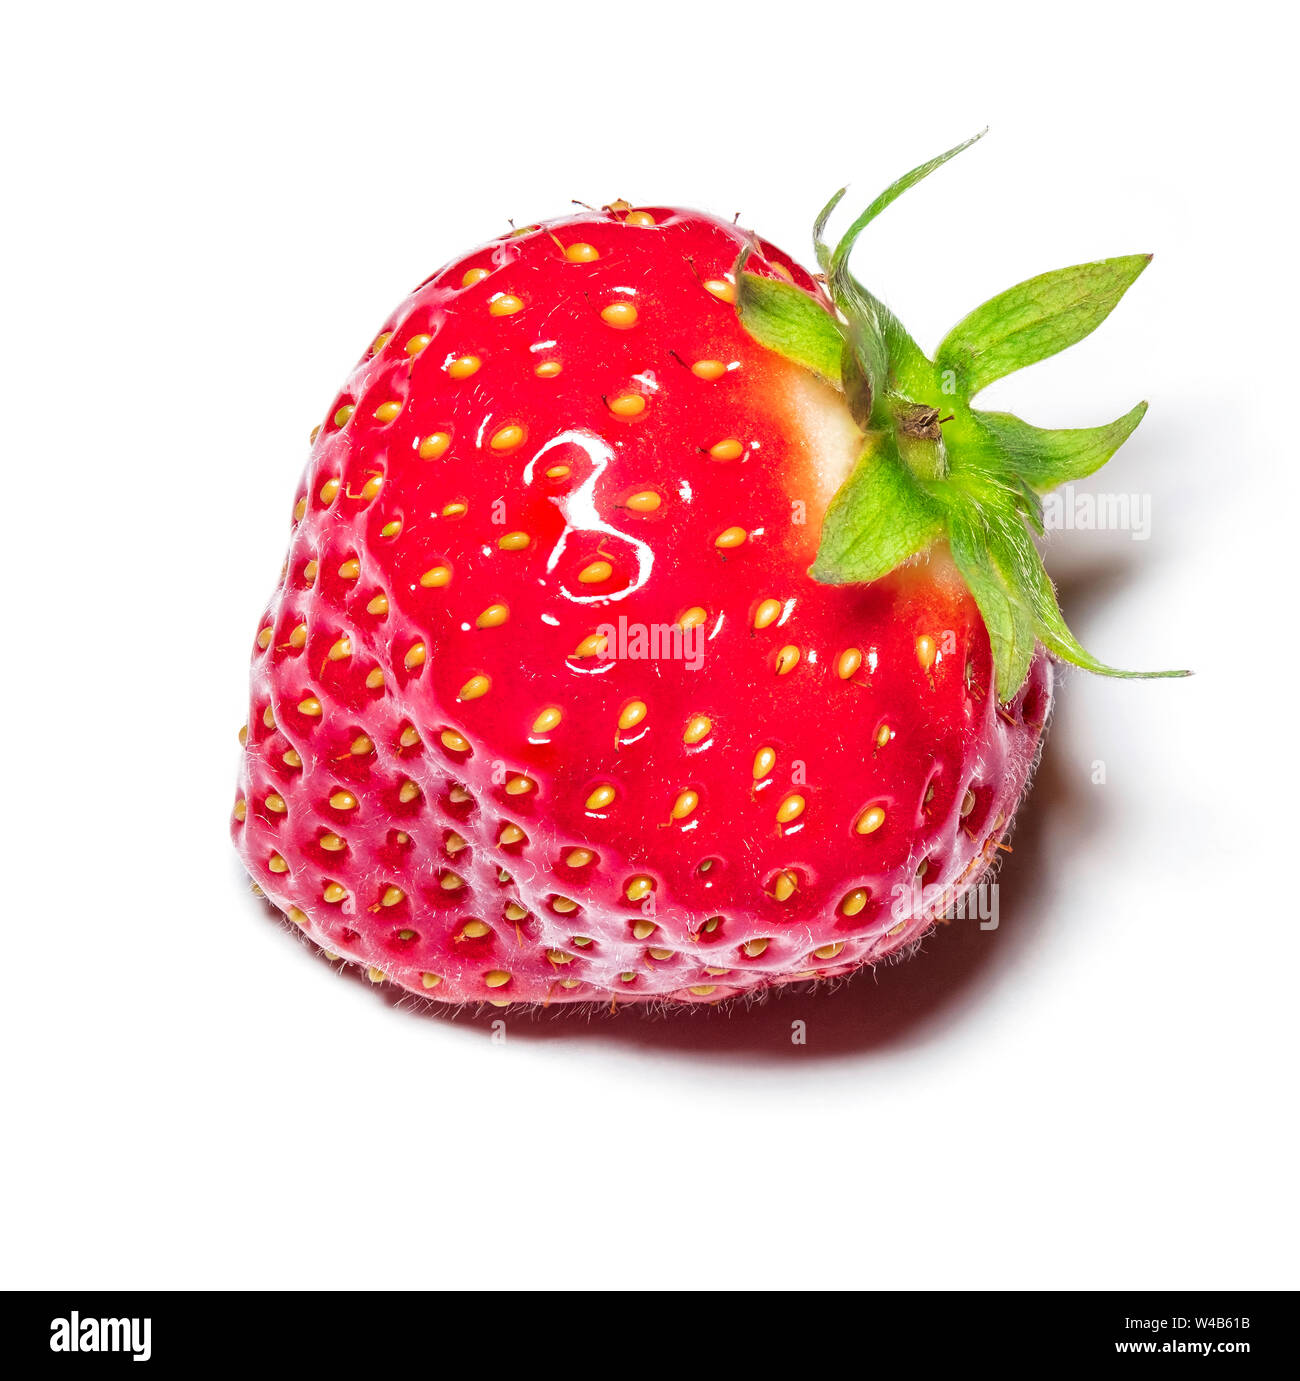 Imagen macro de un recién elegido fresa - focus fotos apiladas Foto de stock